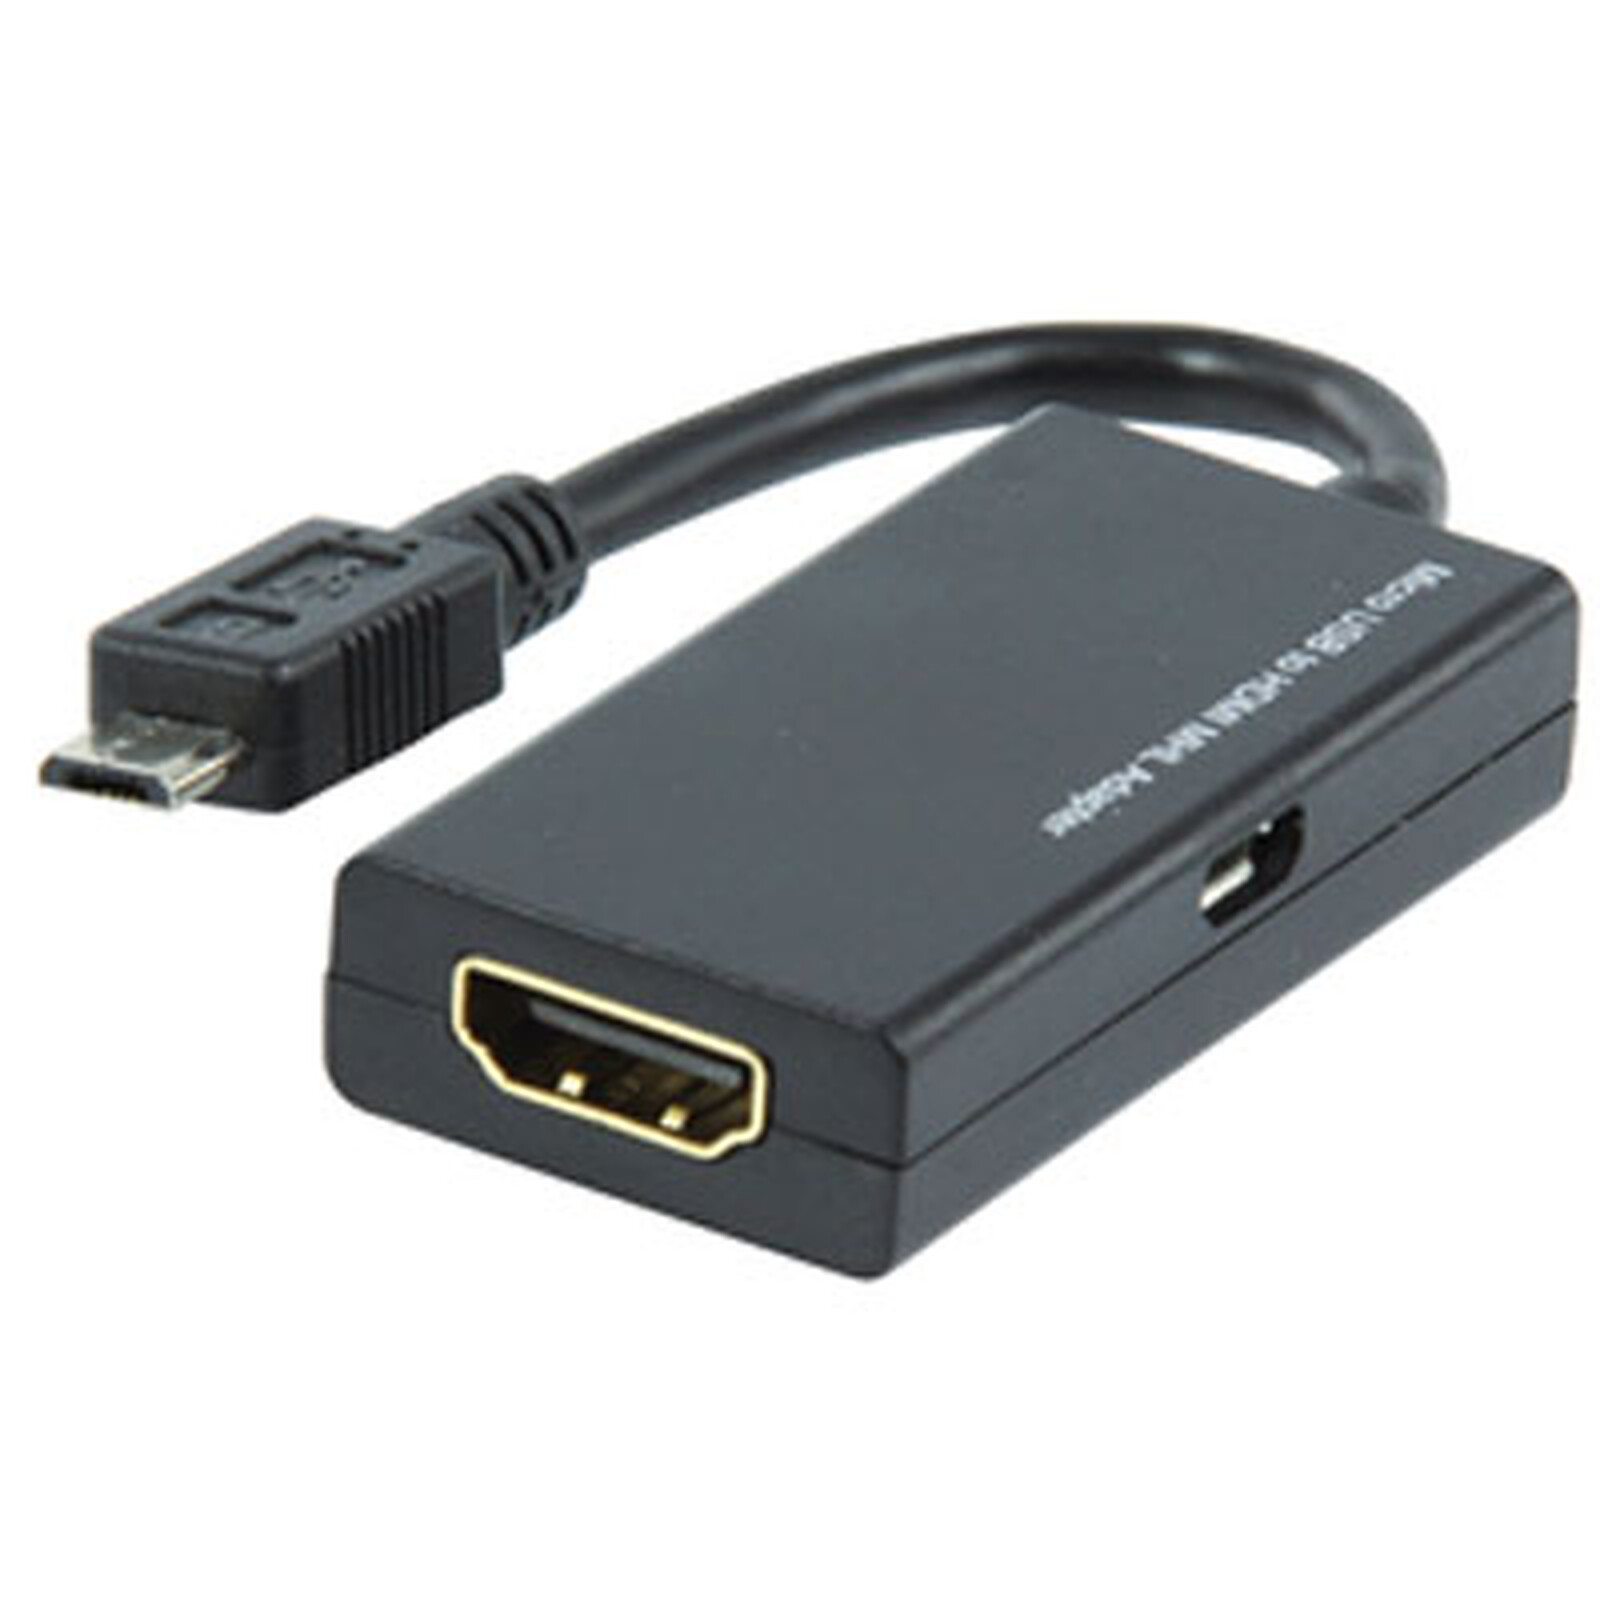 Переходник для подключения телефона. Micro HDMI для USB порта. Переходник адаптер 50 Pin HDMI USB. Адаптер deppa USB-С to HDMI. Micro USB 3.0 К HDMI MHL адаптер.